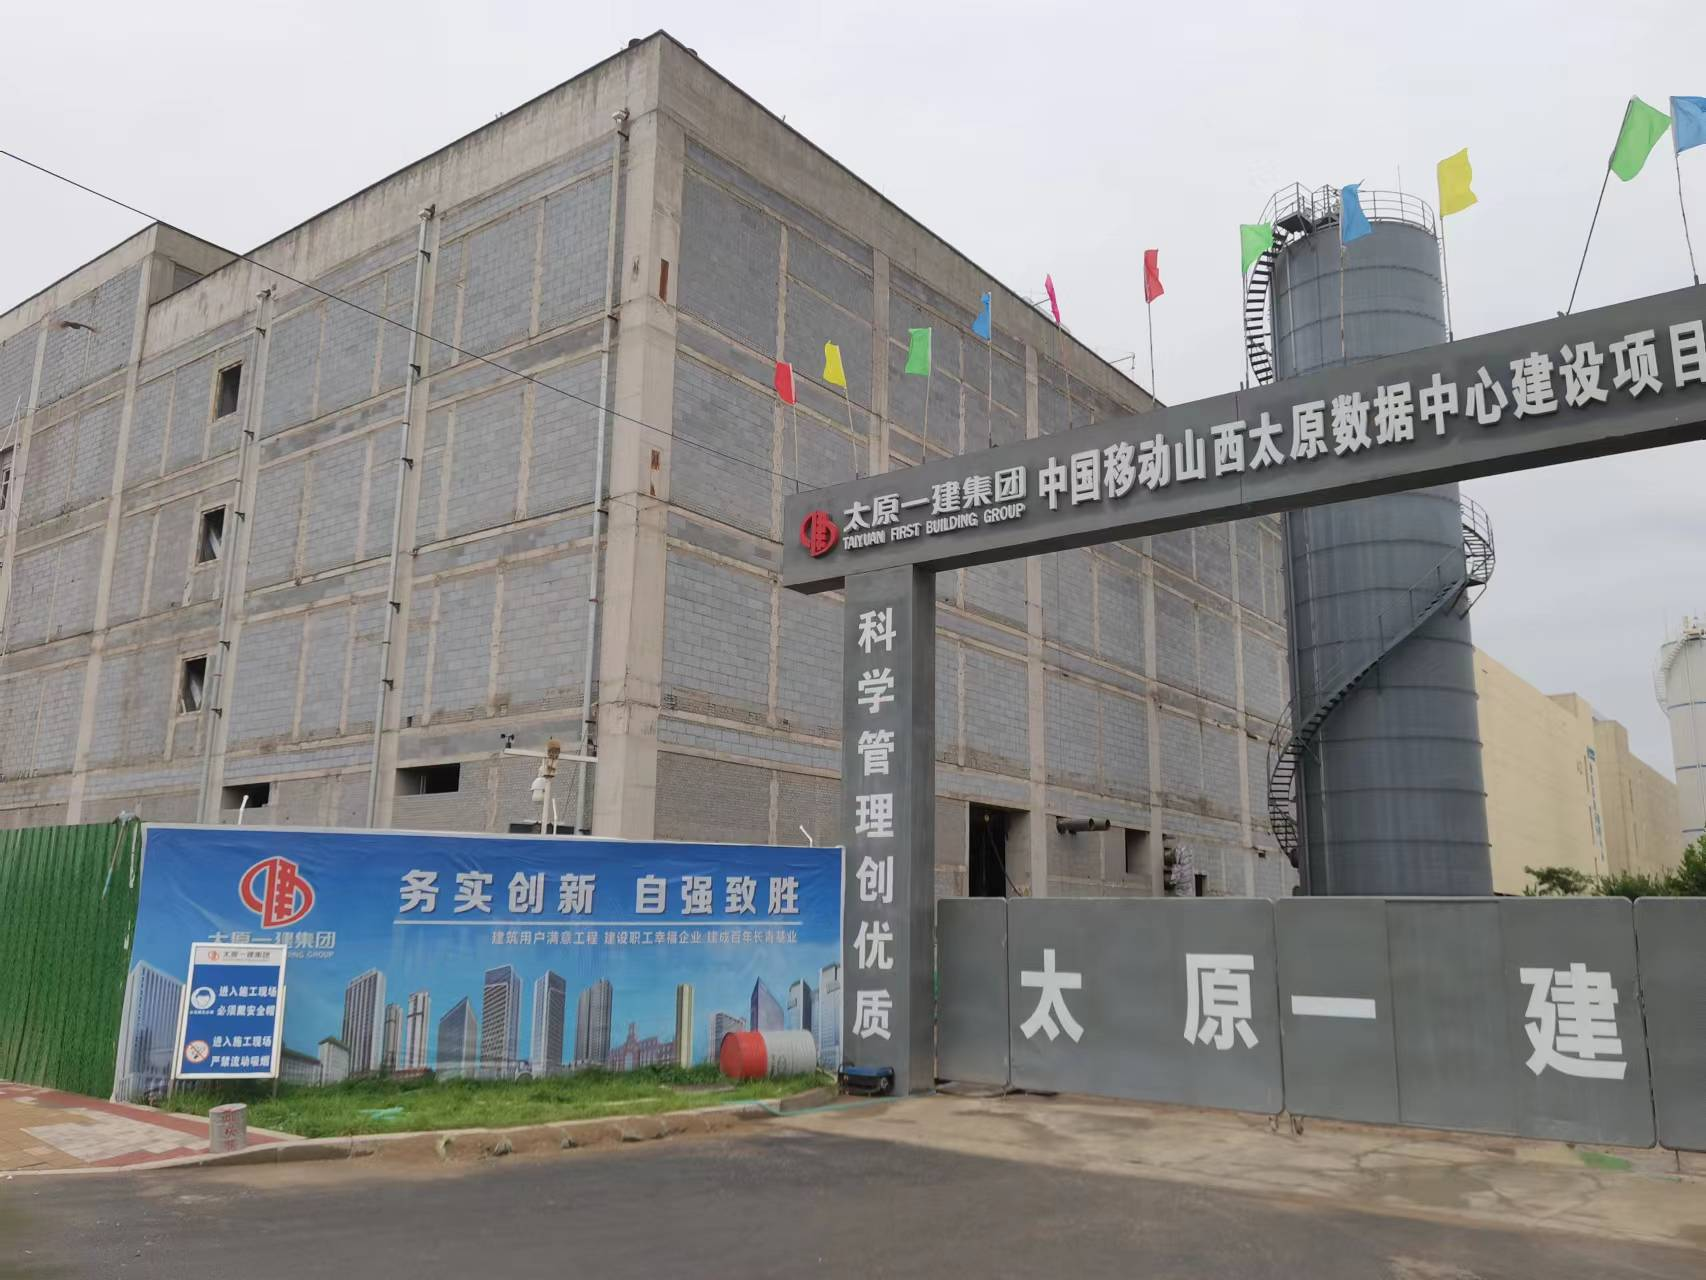 Έργο Taiyuan Mobile Data Center